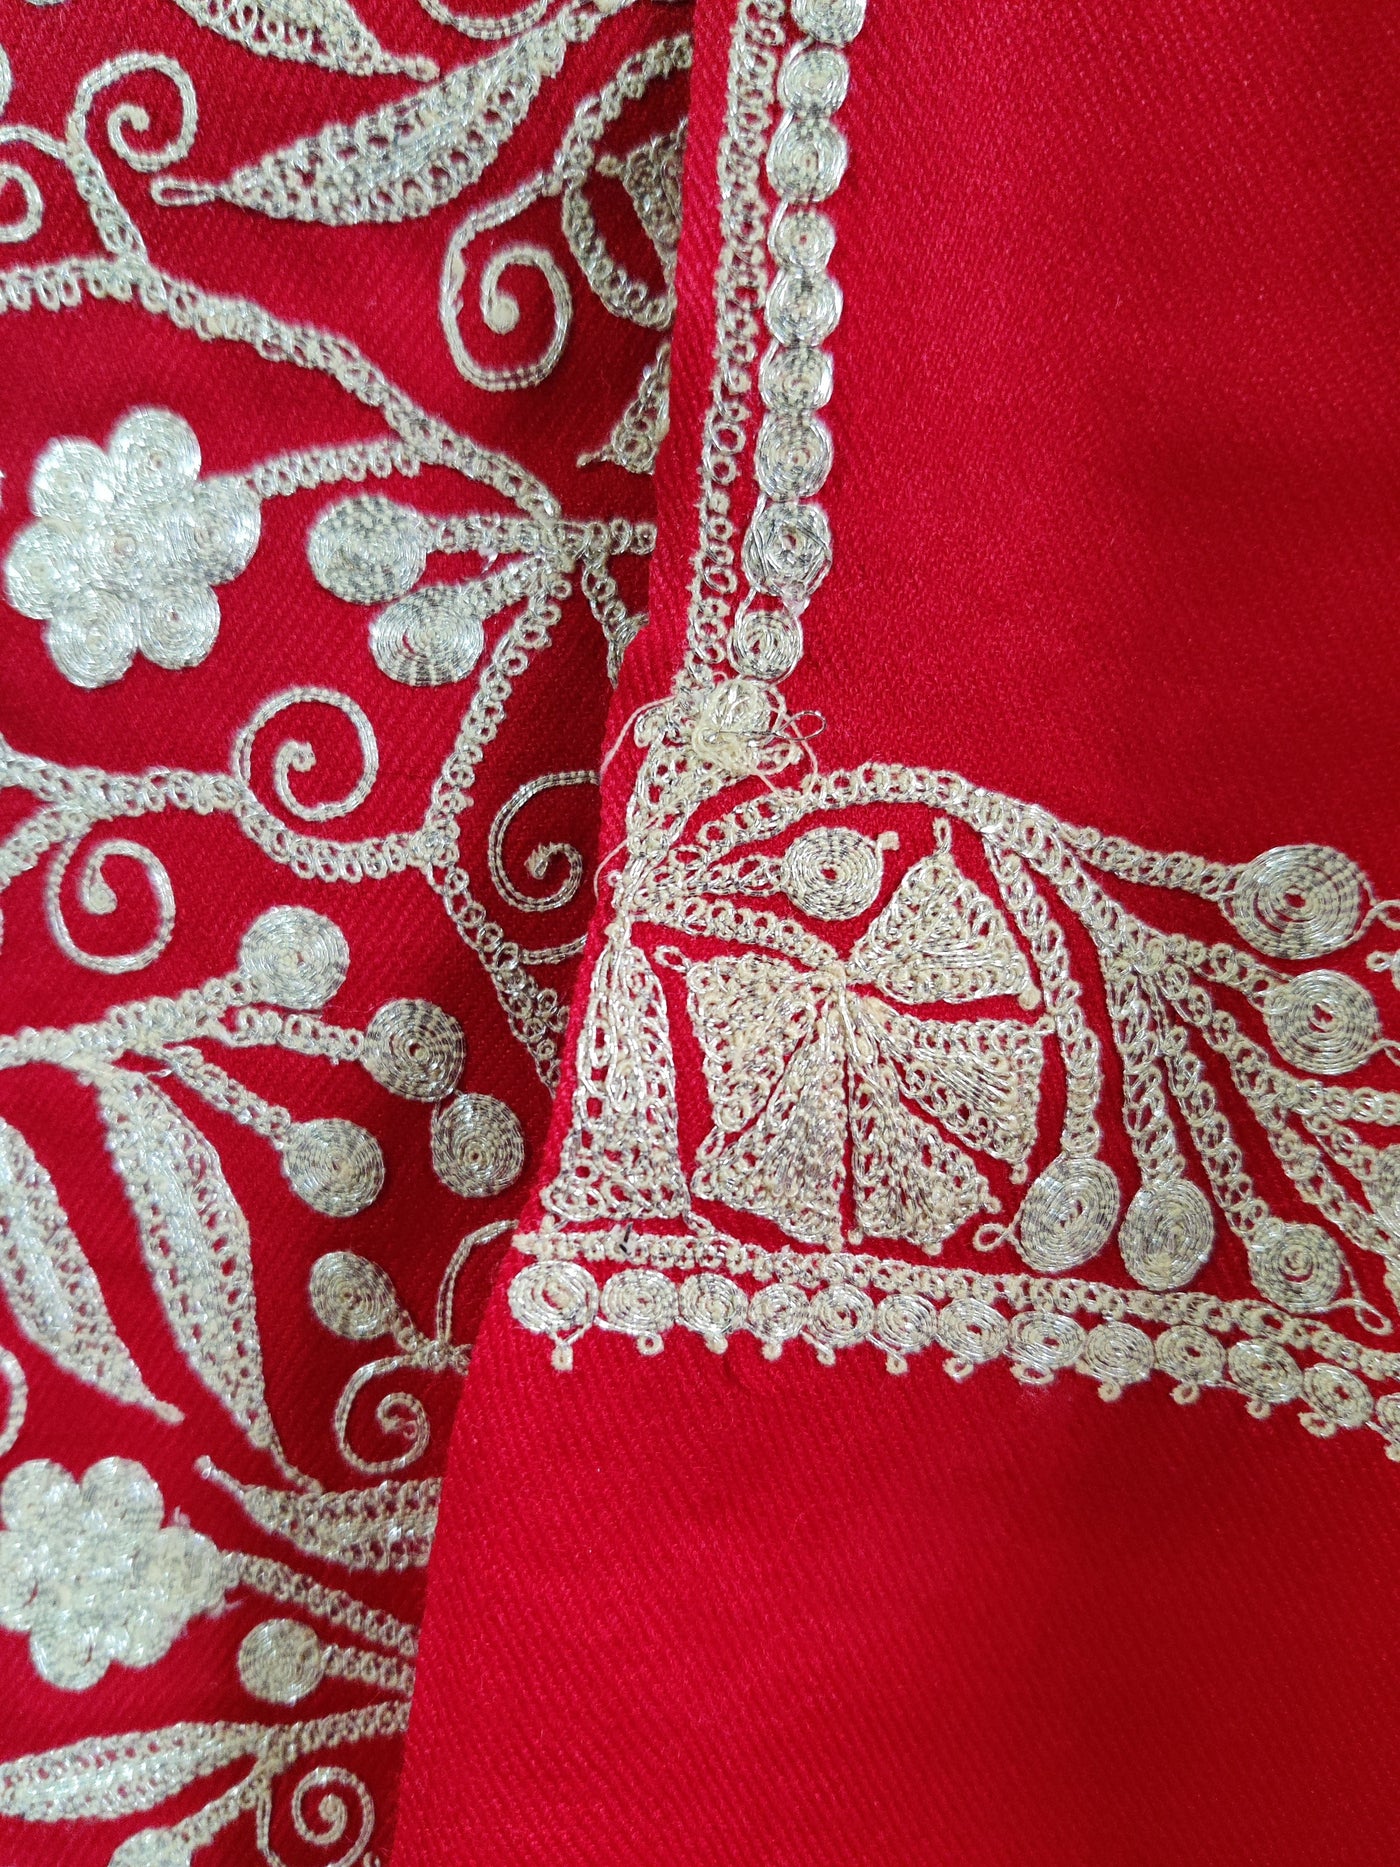 Maroon Kashmiri Woolen Suit With White Tilla Embroidery Jaal Design (3 Pcs) Woolen Suit KashmKari Blue Kashmiri Woollen Suit With Tilla Embroidery jaal design (3 pcs).  Kashmiri Suit online